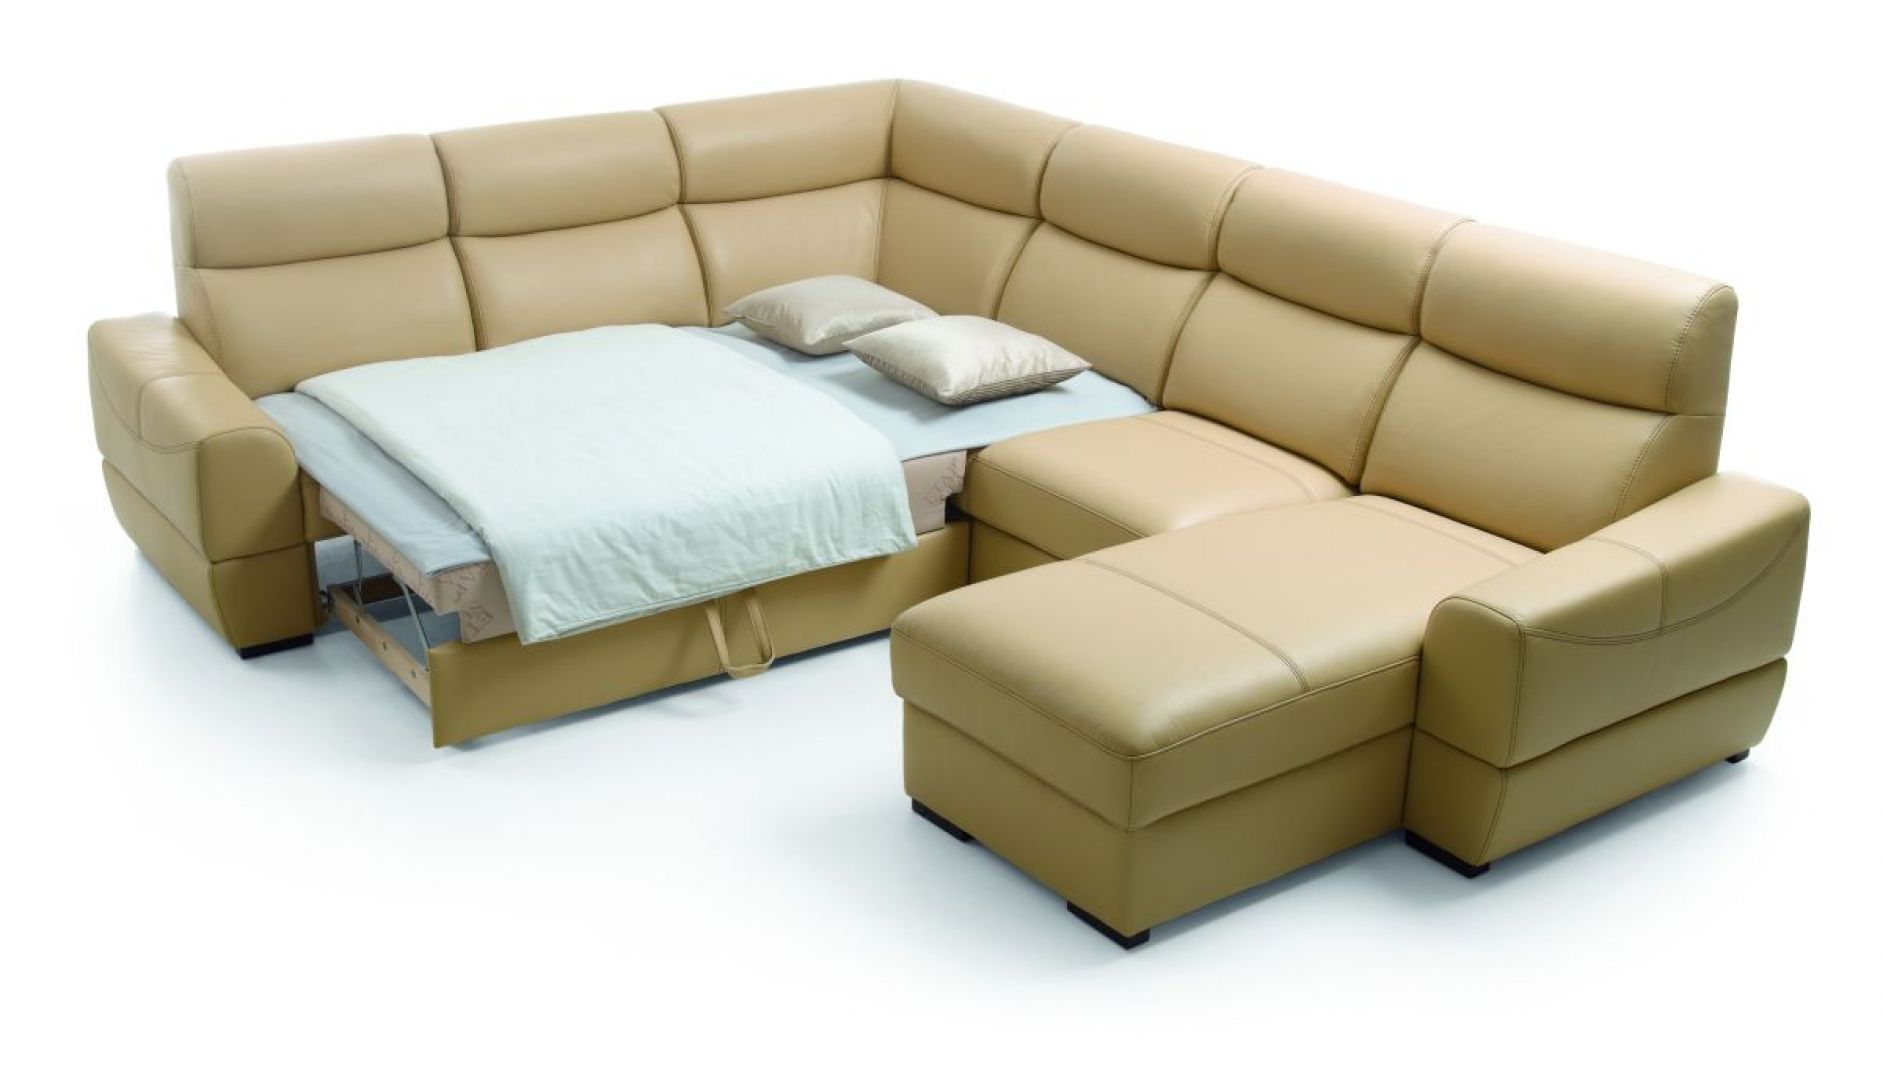 Funkcja spania zastosowana w narożniku „Grand Vario” marki Etap Sofa. Fot. Etap Sofa